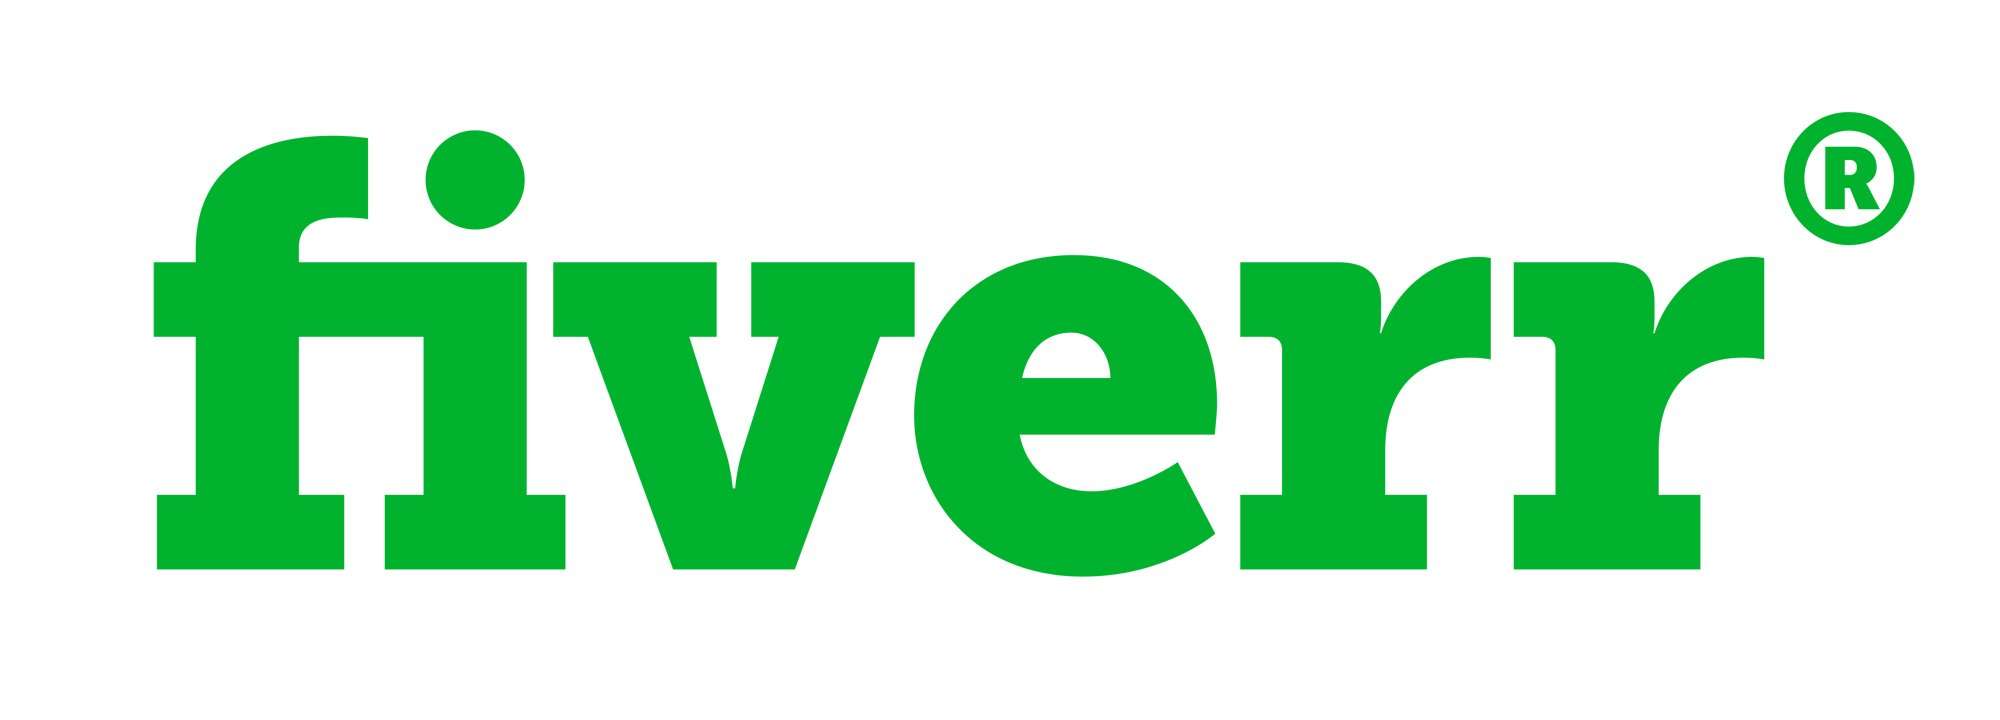 Font-Fiverr-Logo